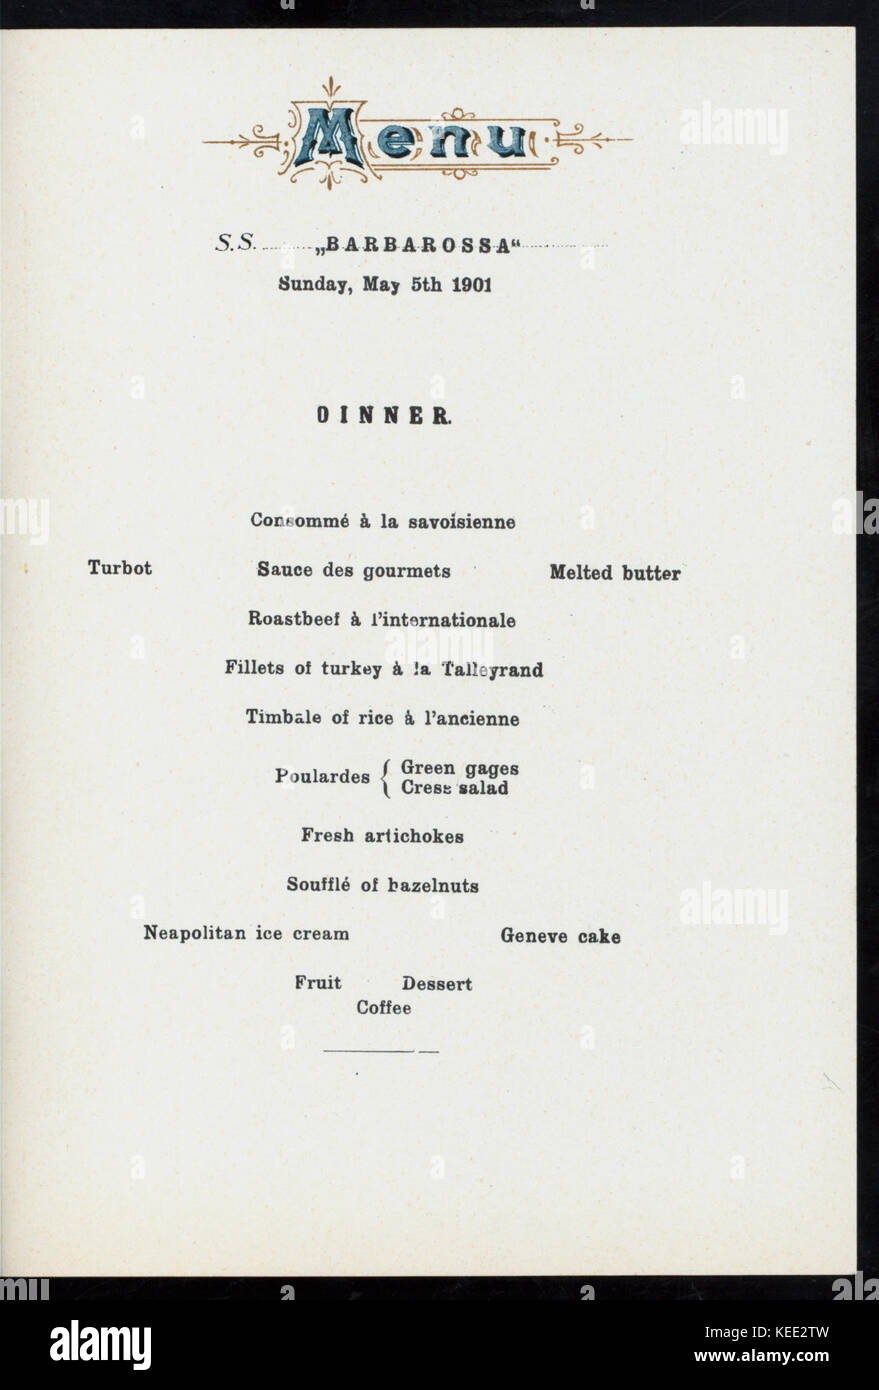 MITTAGESSEN   DINNER (held by) NORDDEUTSCHER LLOYD BREMEN (at)  DAMPFER  BARBAROSSA  (SS;) (NYPL Hades 276233 4000013512) Stock Photo